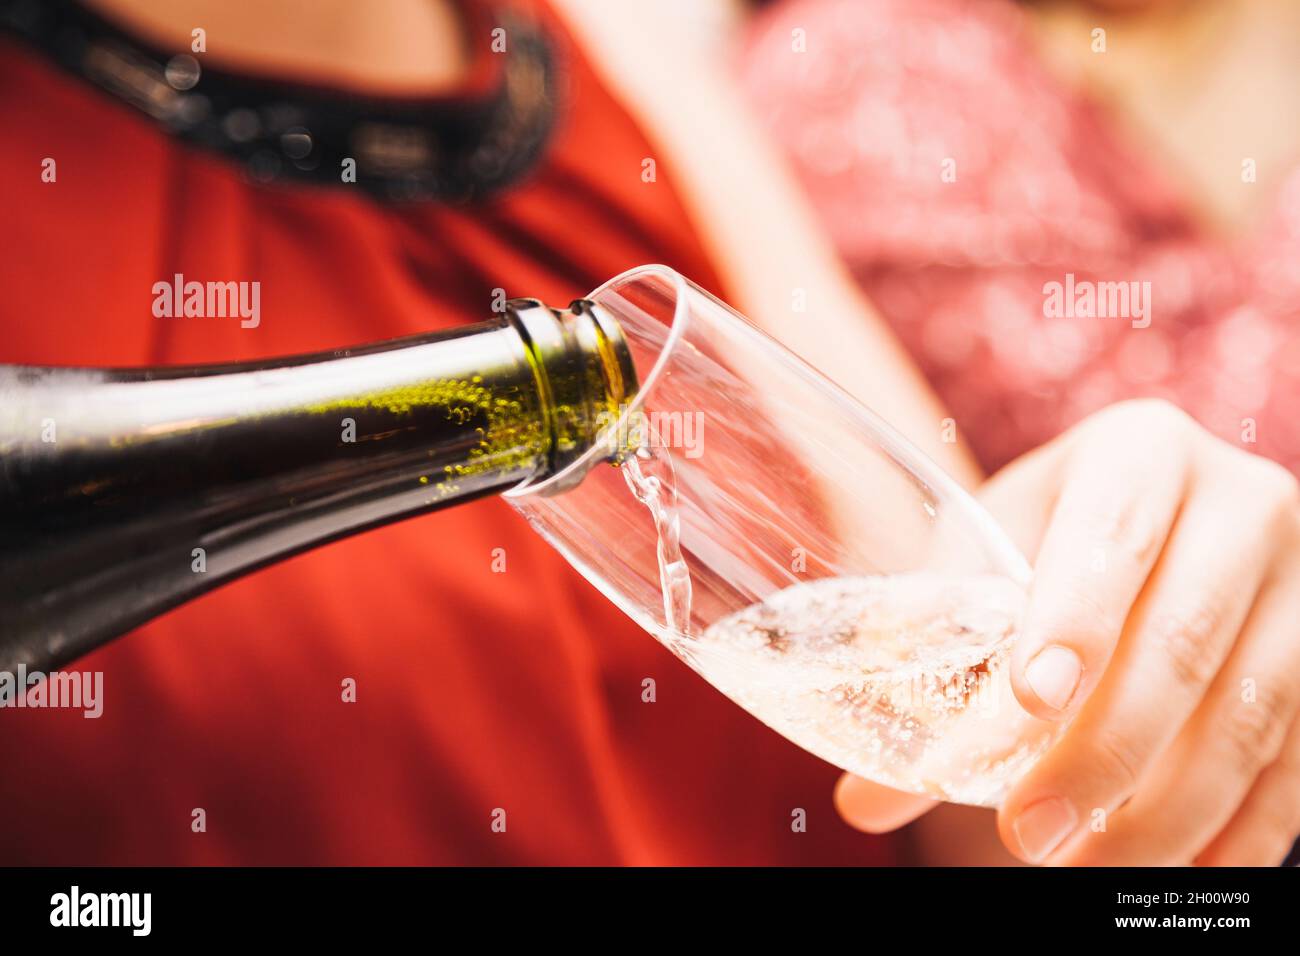 Les mains d'une femme inconnue portant une robe rouge tenant un verre comme elle le remplit de cava d'une bouteille de verre vert. Banque D'Images